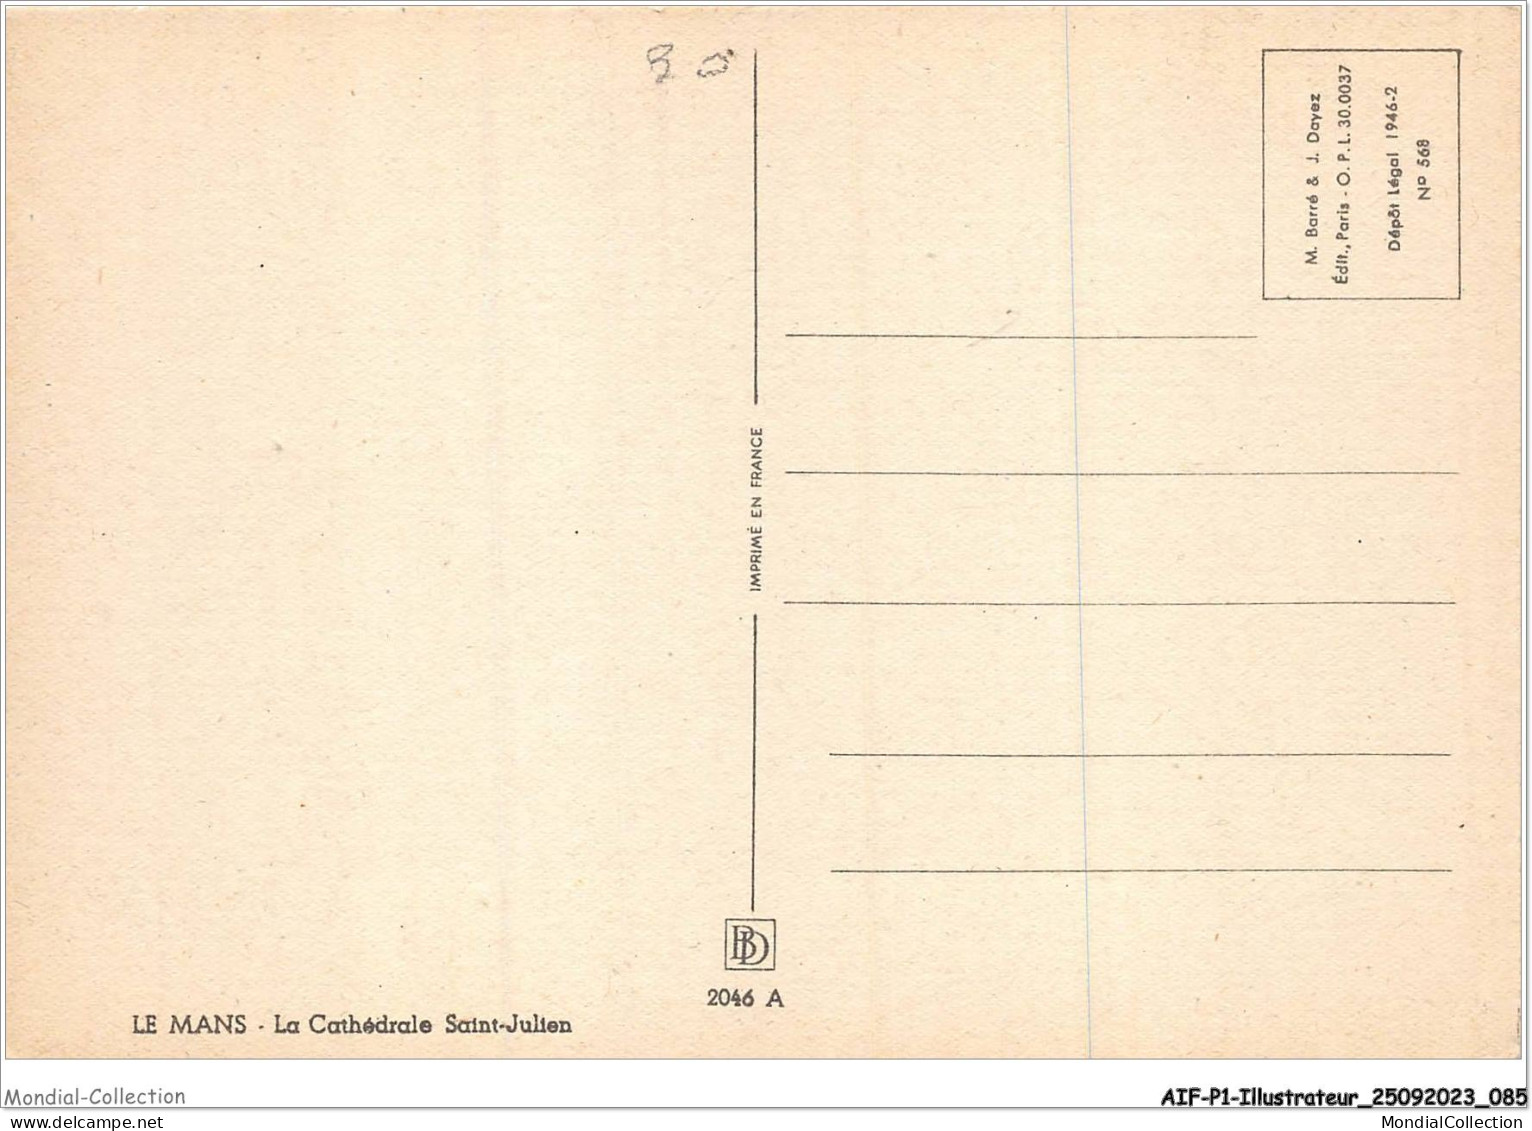 AIFP1-ILLUSTRATEUR-0043 - BARDAY - LE MANS - La Cathédrale Saint-julien  - Barday